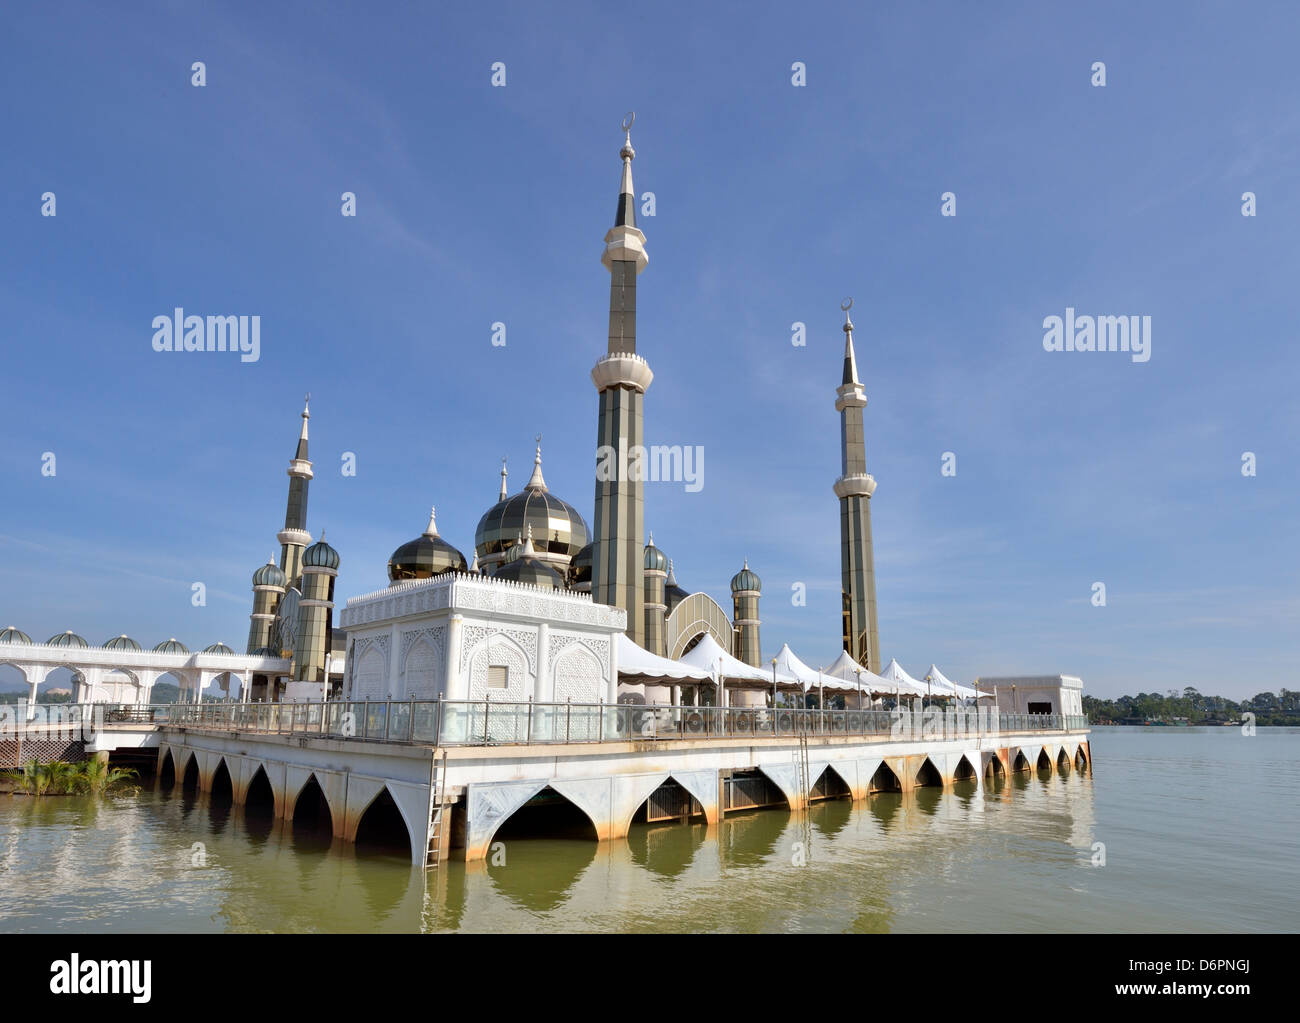 Crystal mosque at Terengganu, Malyaysia Stock Photo